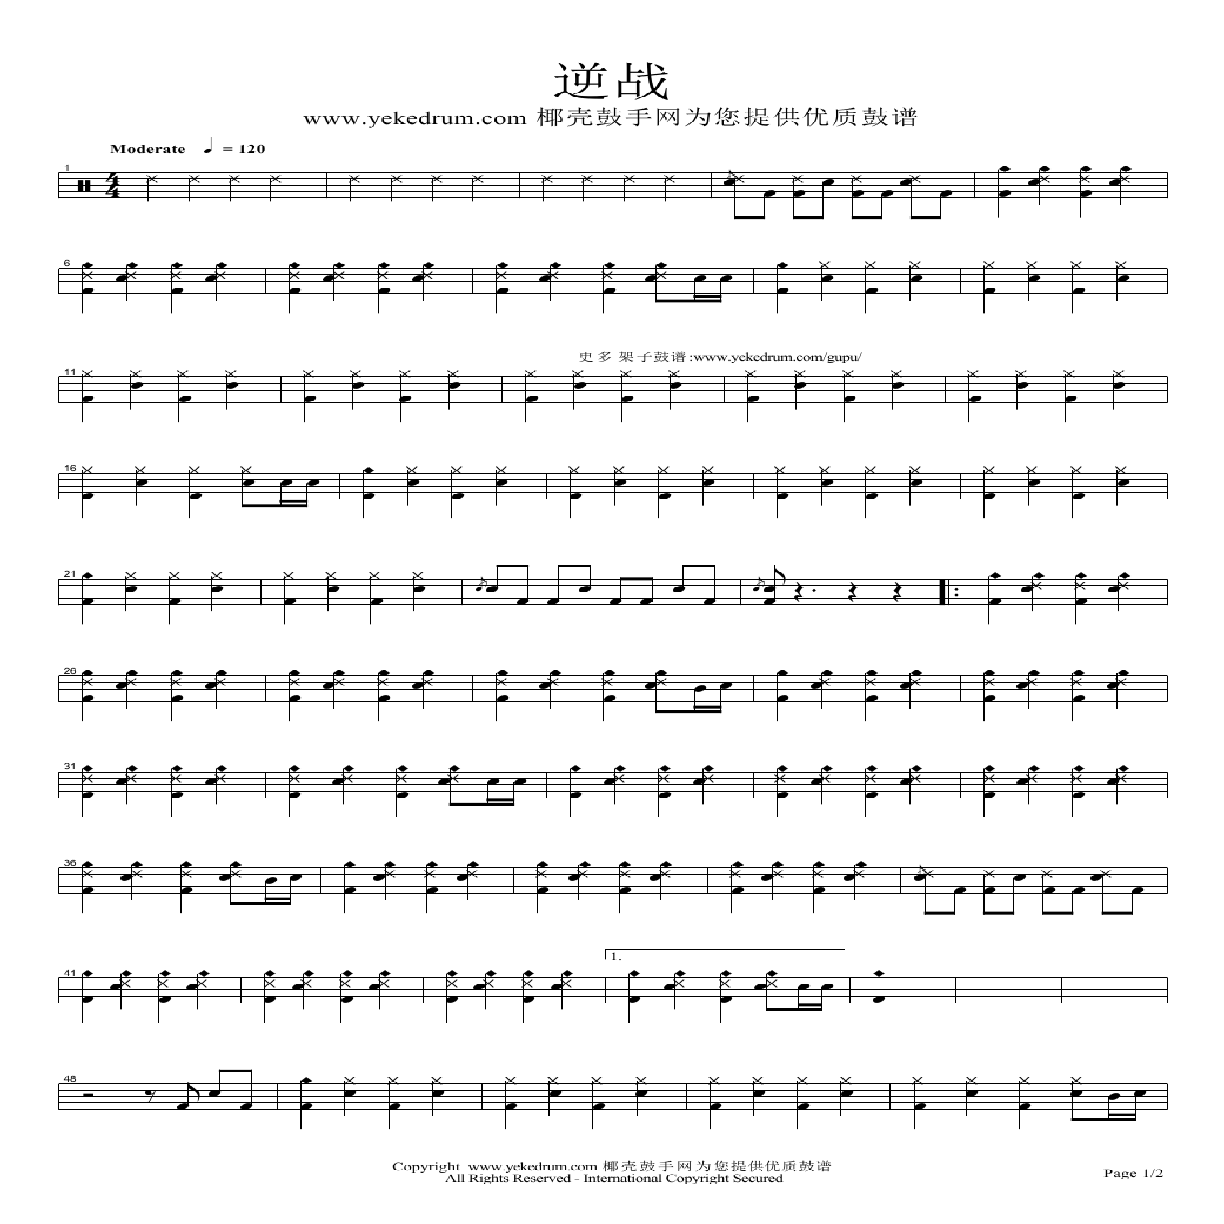 琉特琴曲谱_钢琴简单曲谱(3)